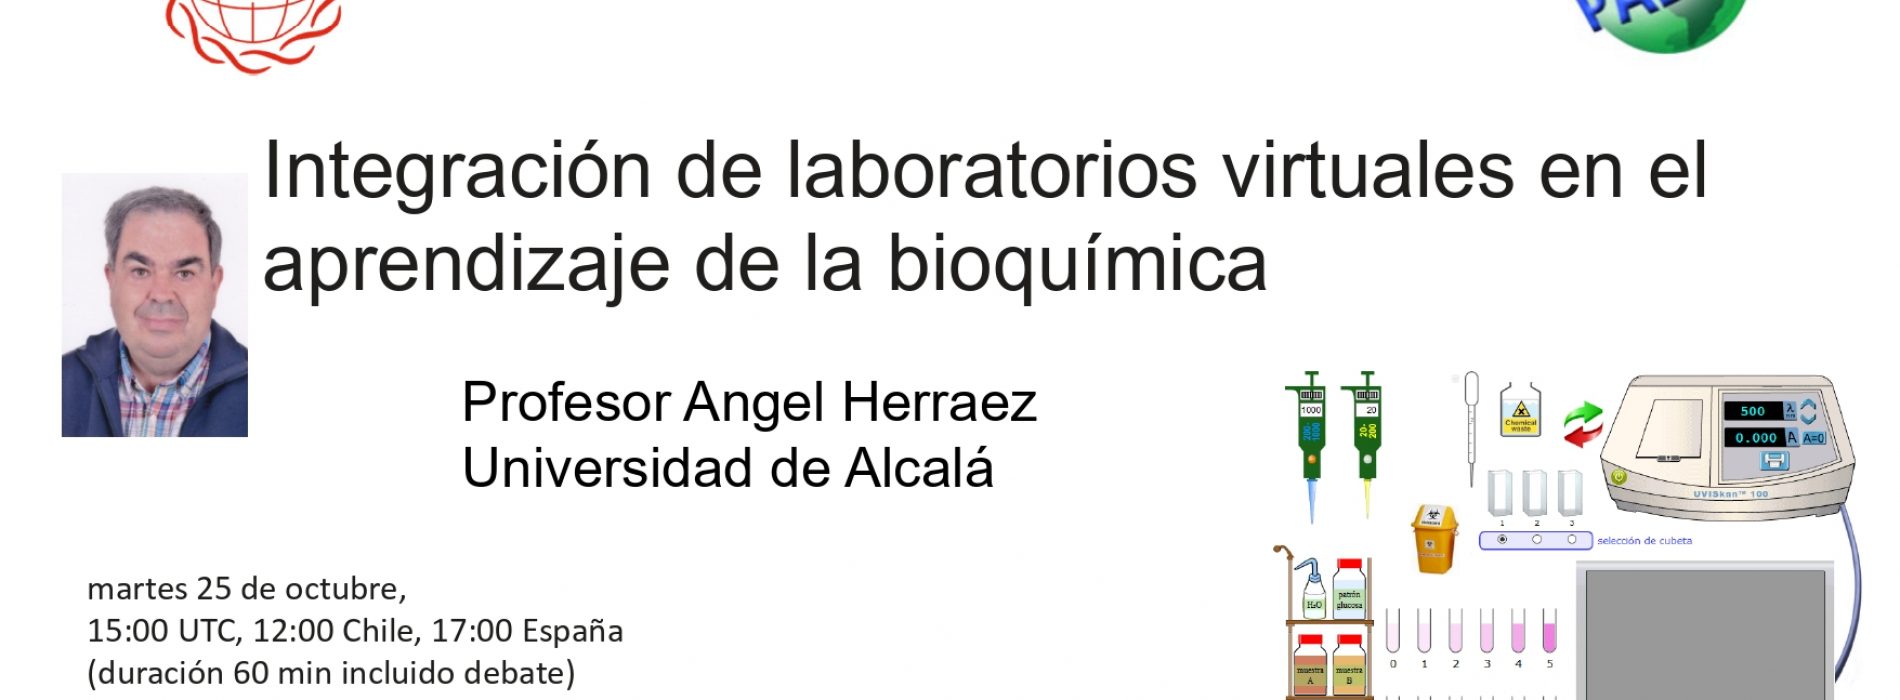 Conferencia Prof. Angel Herráez sobre Aprendizaje en Bioquímica y Biología Molecular